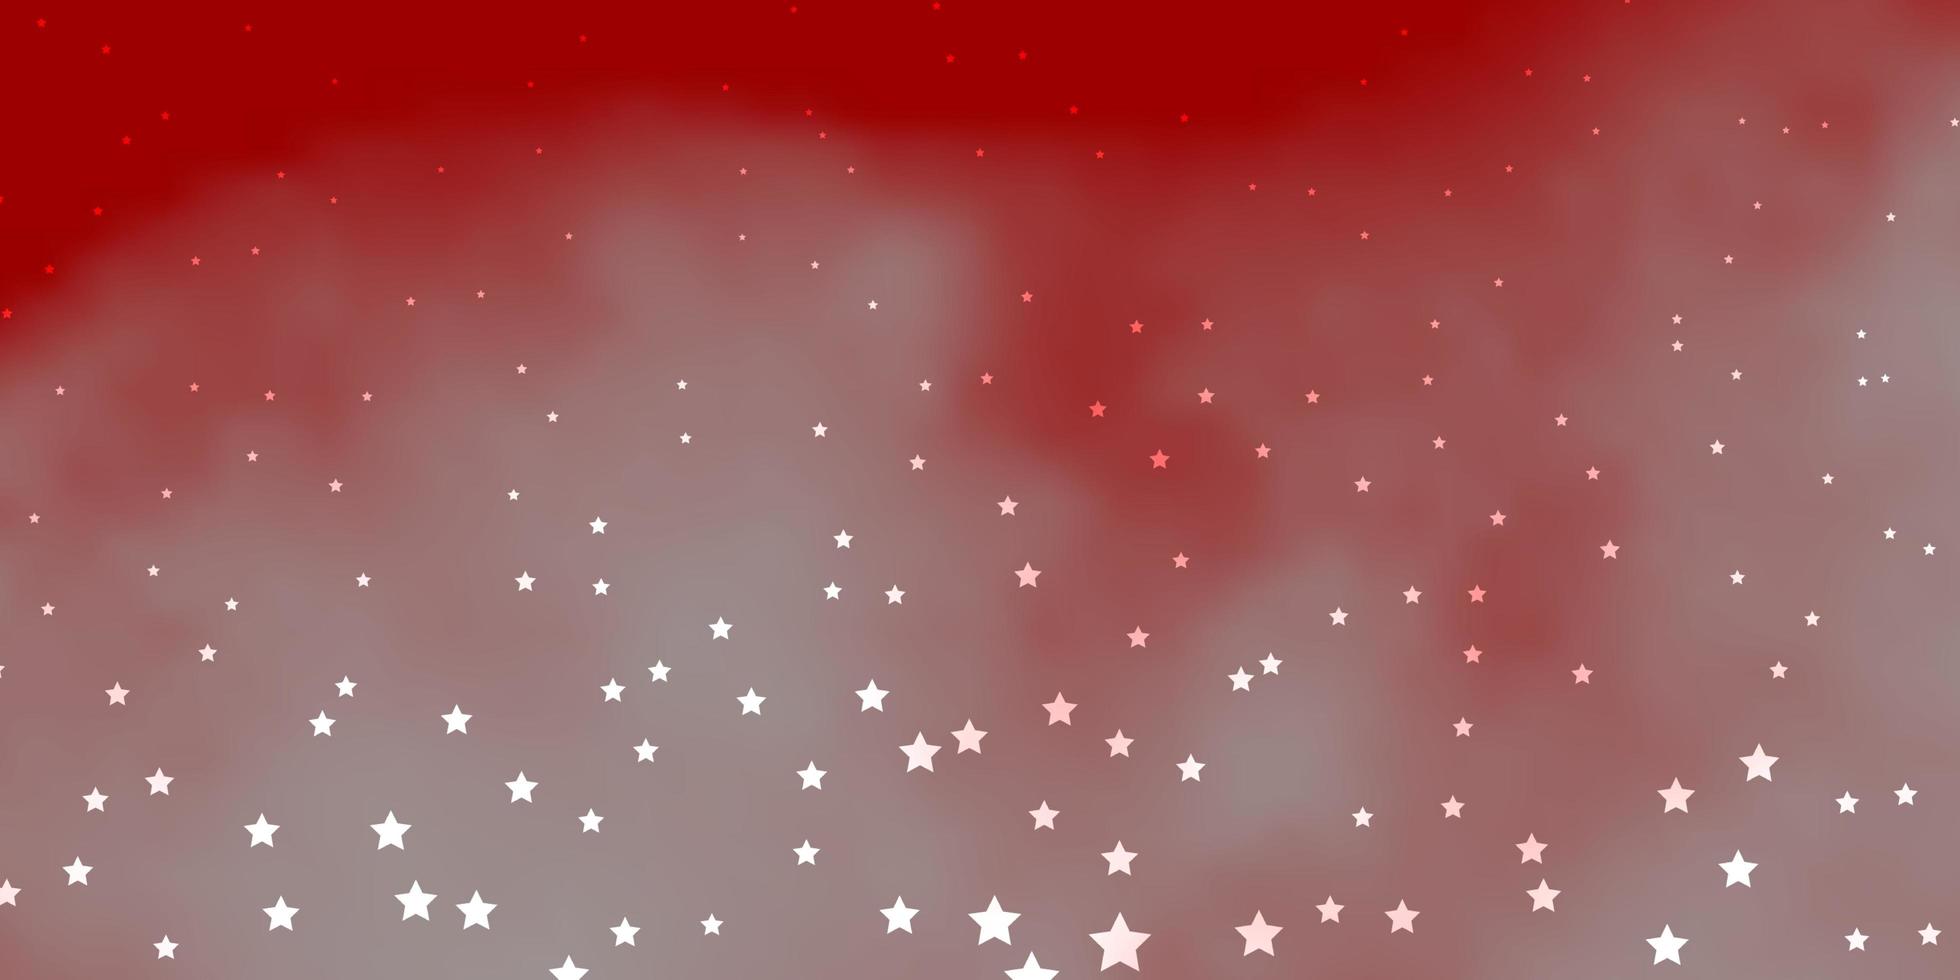 plantilla de vector rojo oscuro con estrellas de neón. colorida ilustración en estilo abstracto con estrellas de degradado. patrón para envolver regalos.